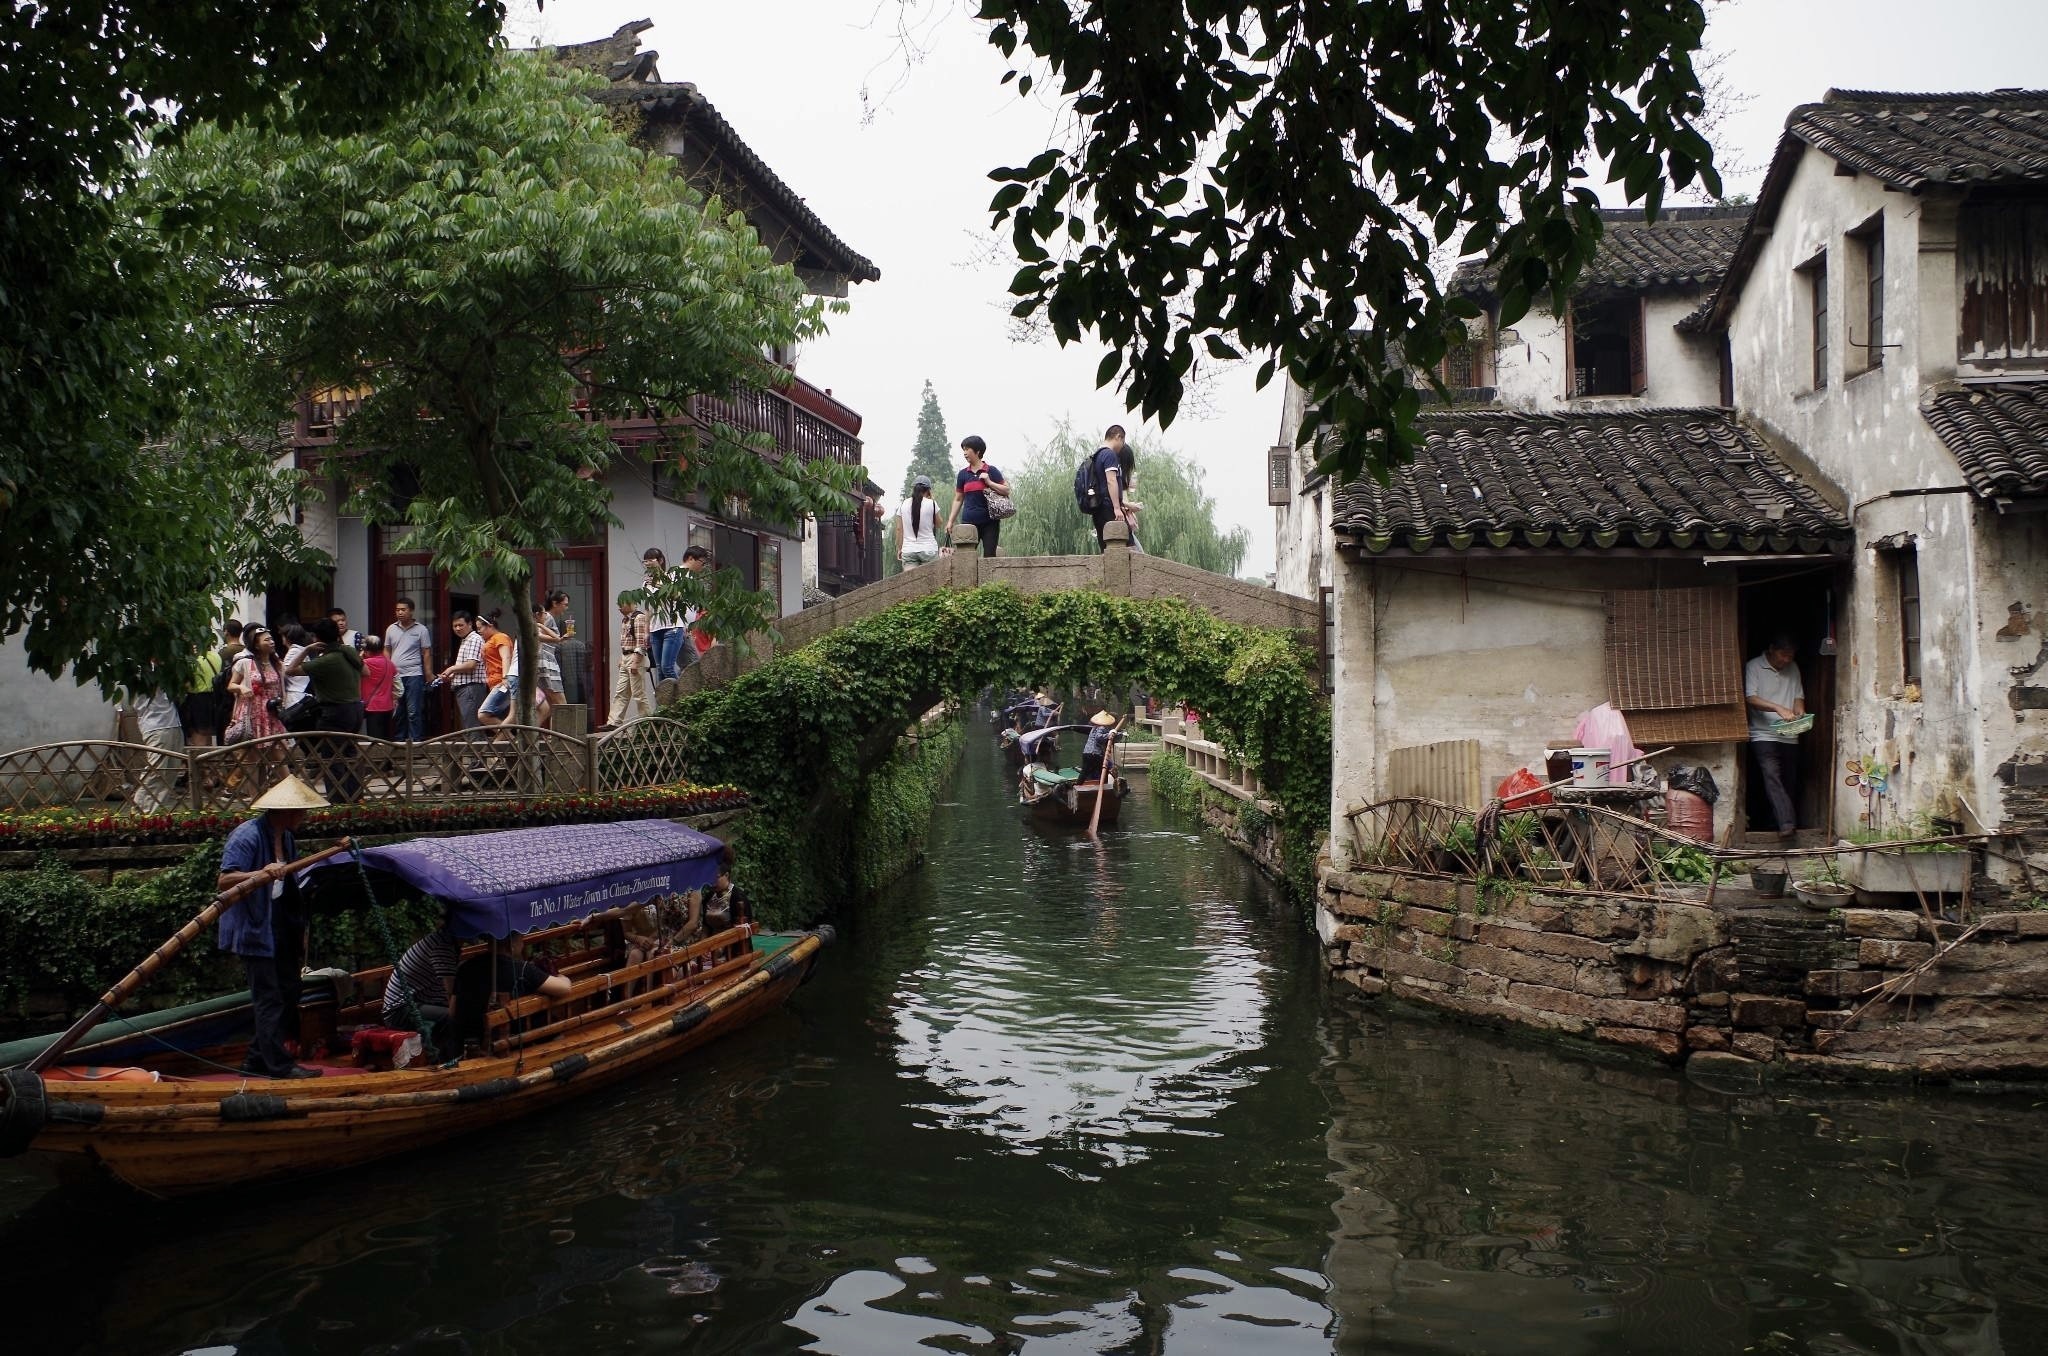 拍摄者： Beautiful Guangxi